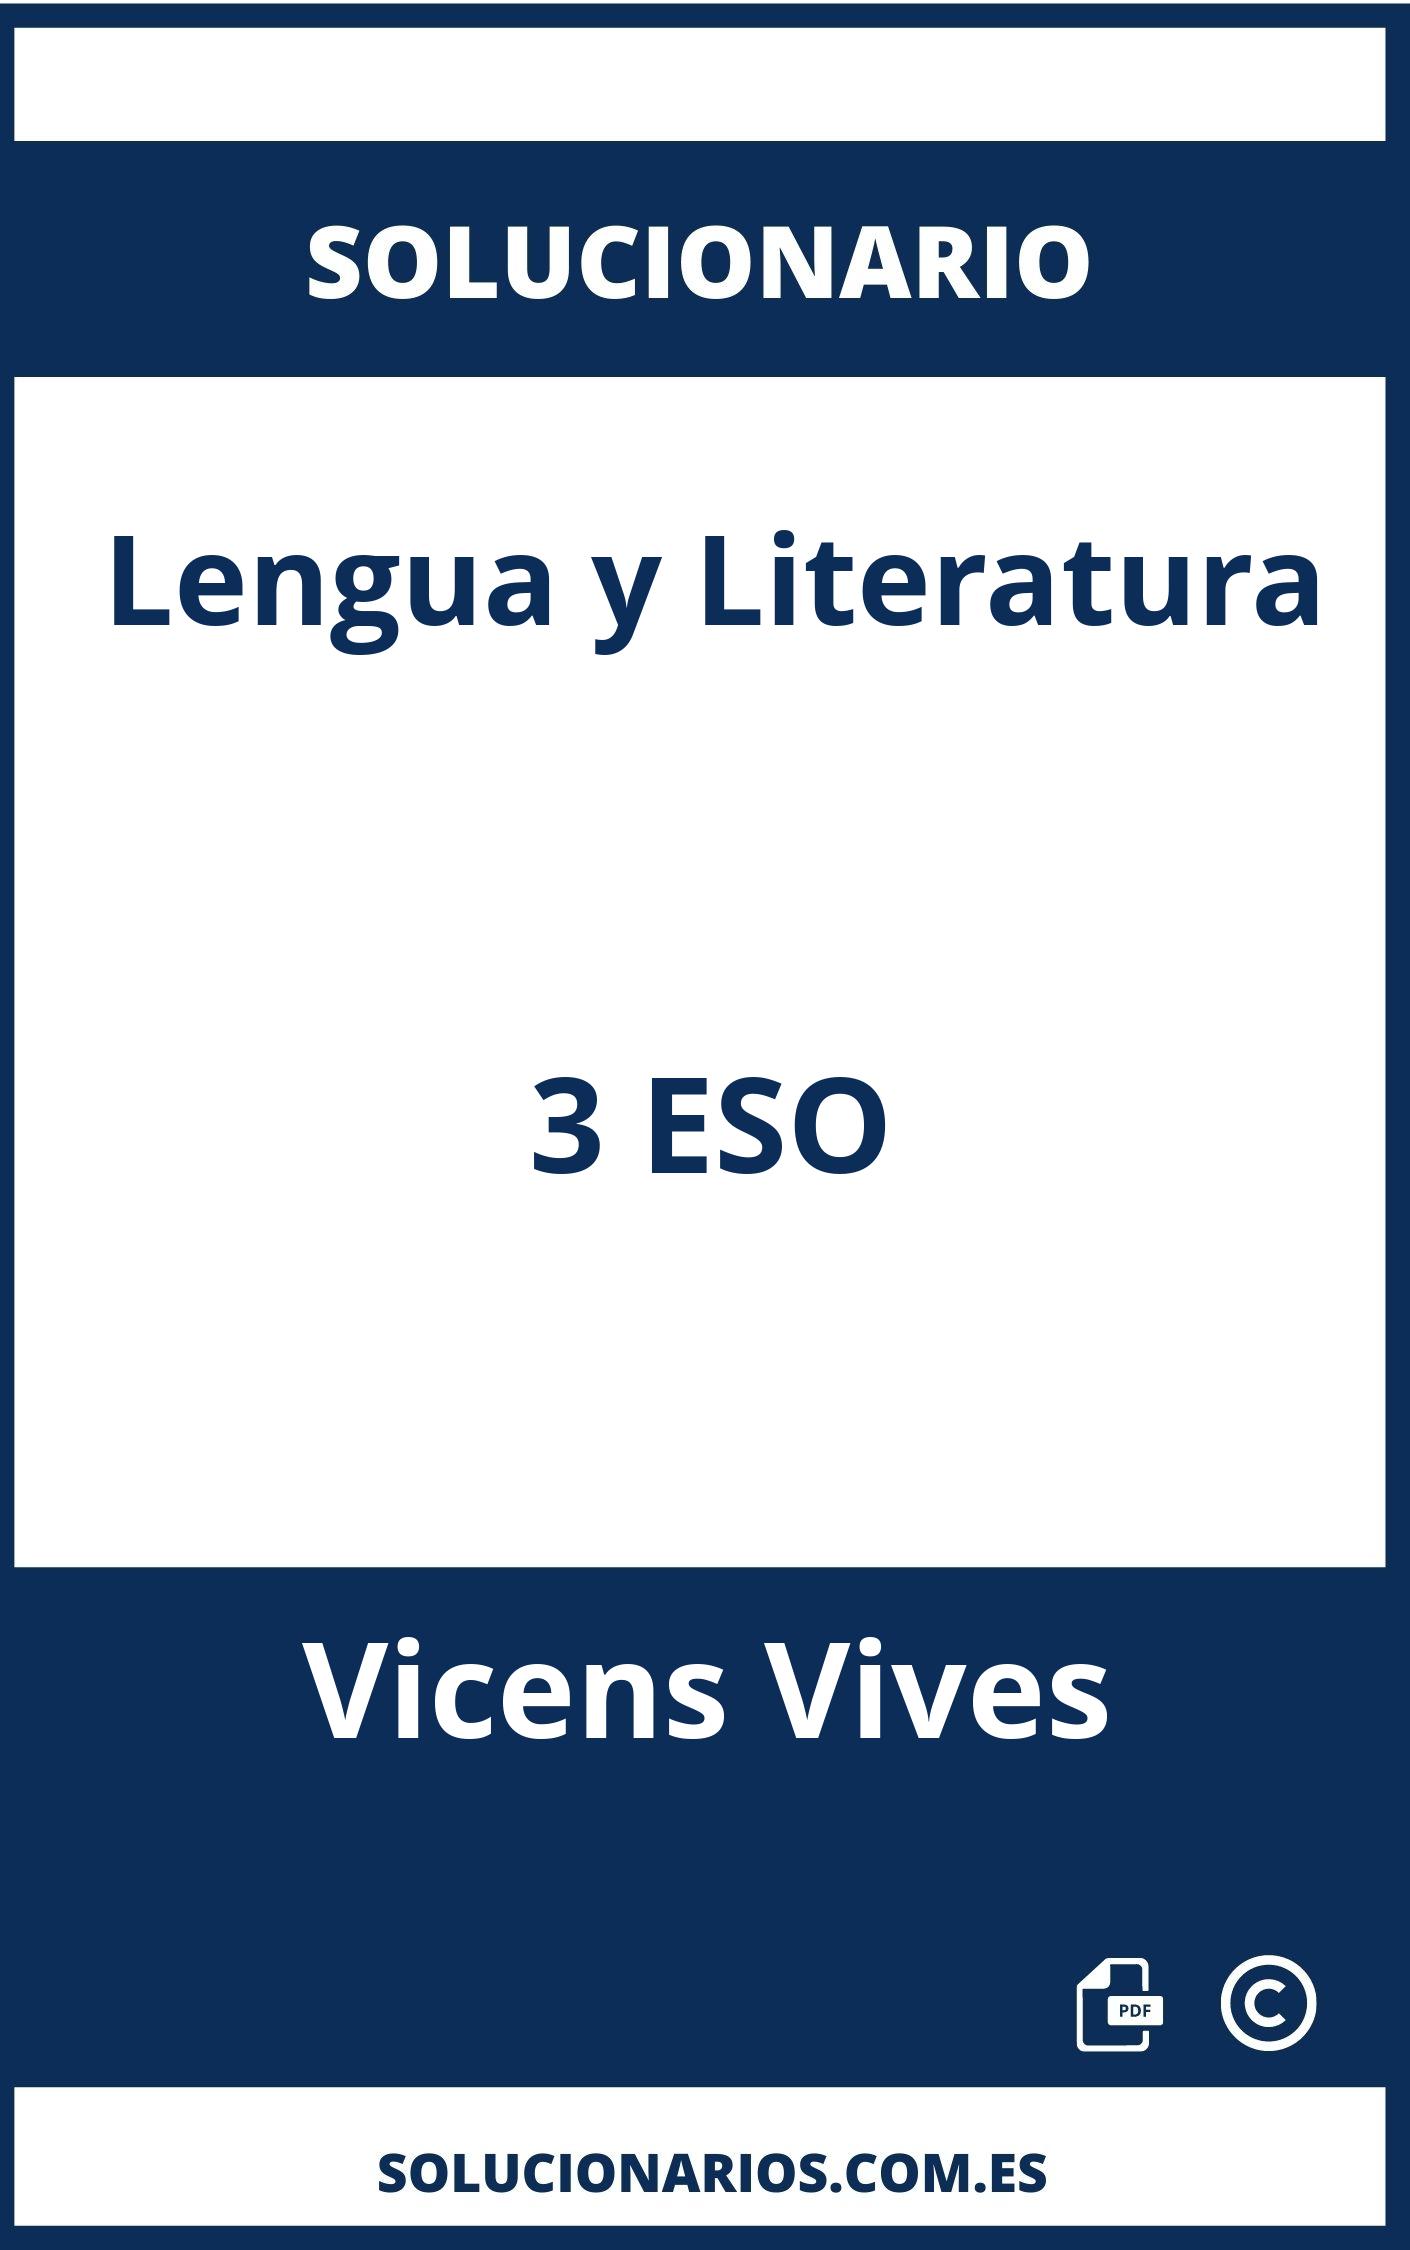 Solucionario Lengua y Literatura 3 ESO Vicens Vives